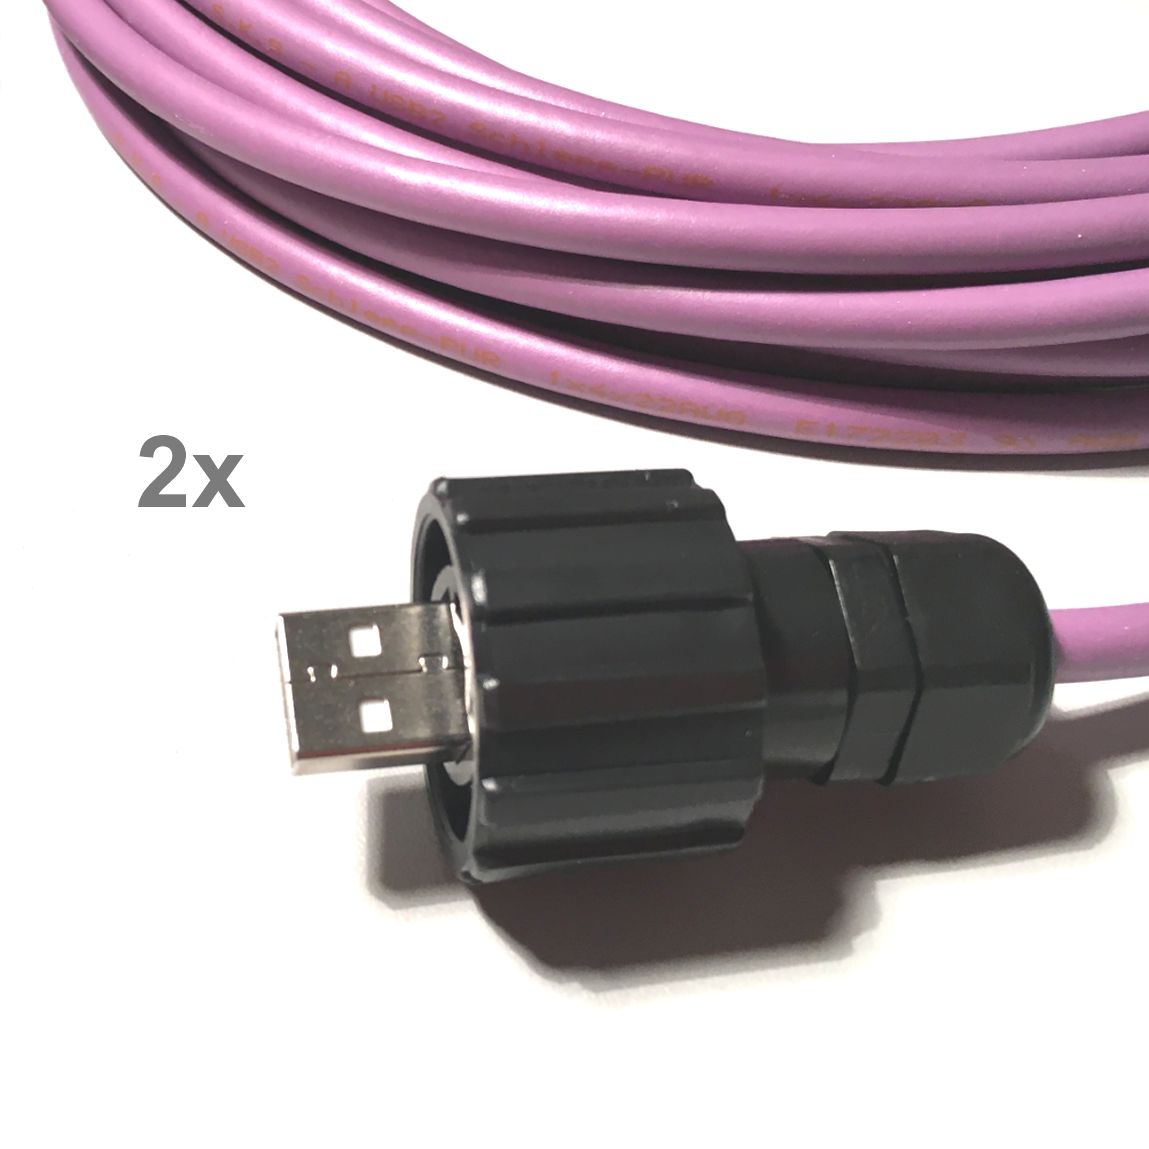 Câble PUR USB 2.0 pour l'industrie et chaînes porte-câbles, 2x CONEC A IP67, 5m